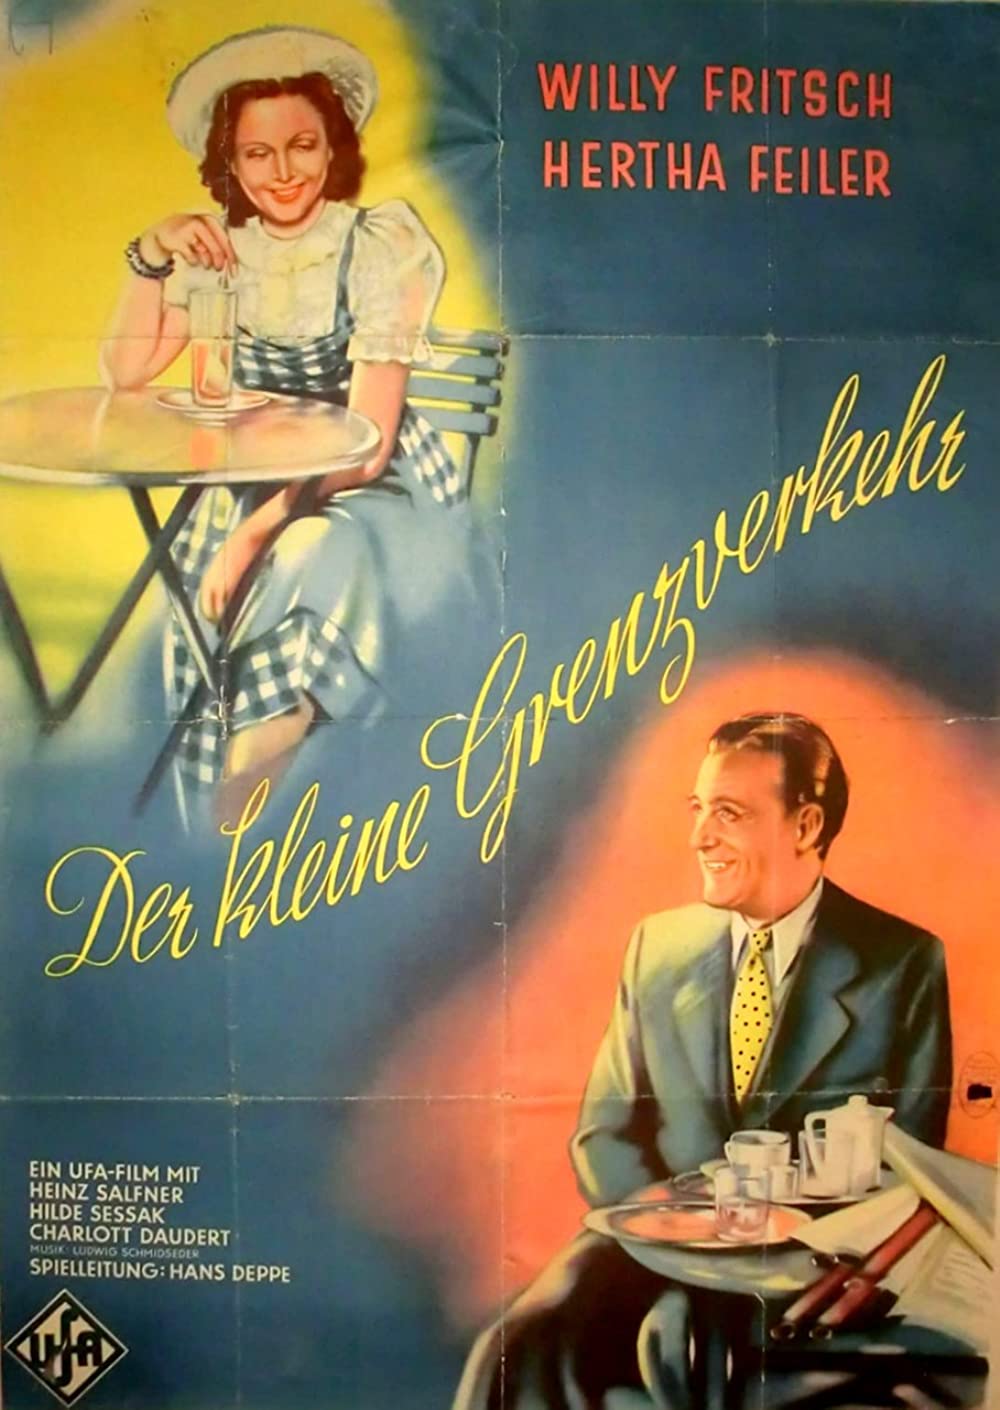 Filmbeschreibung zu Der kleine Grenzverkehr (1943)